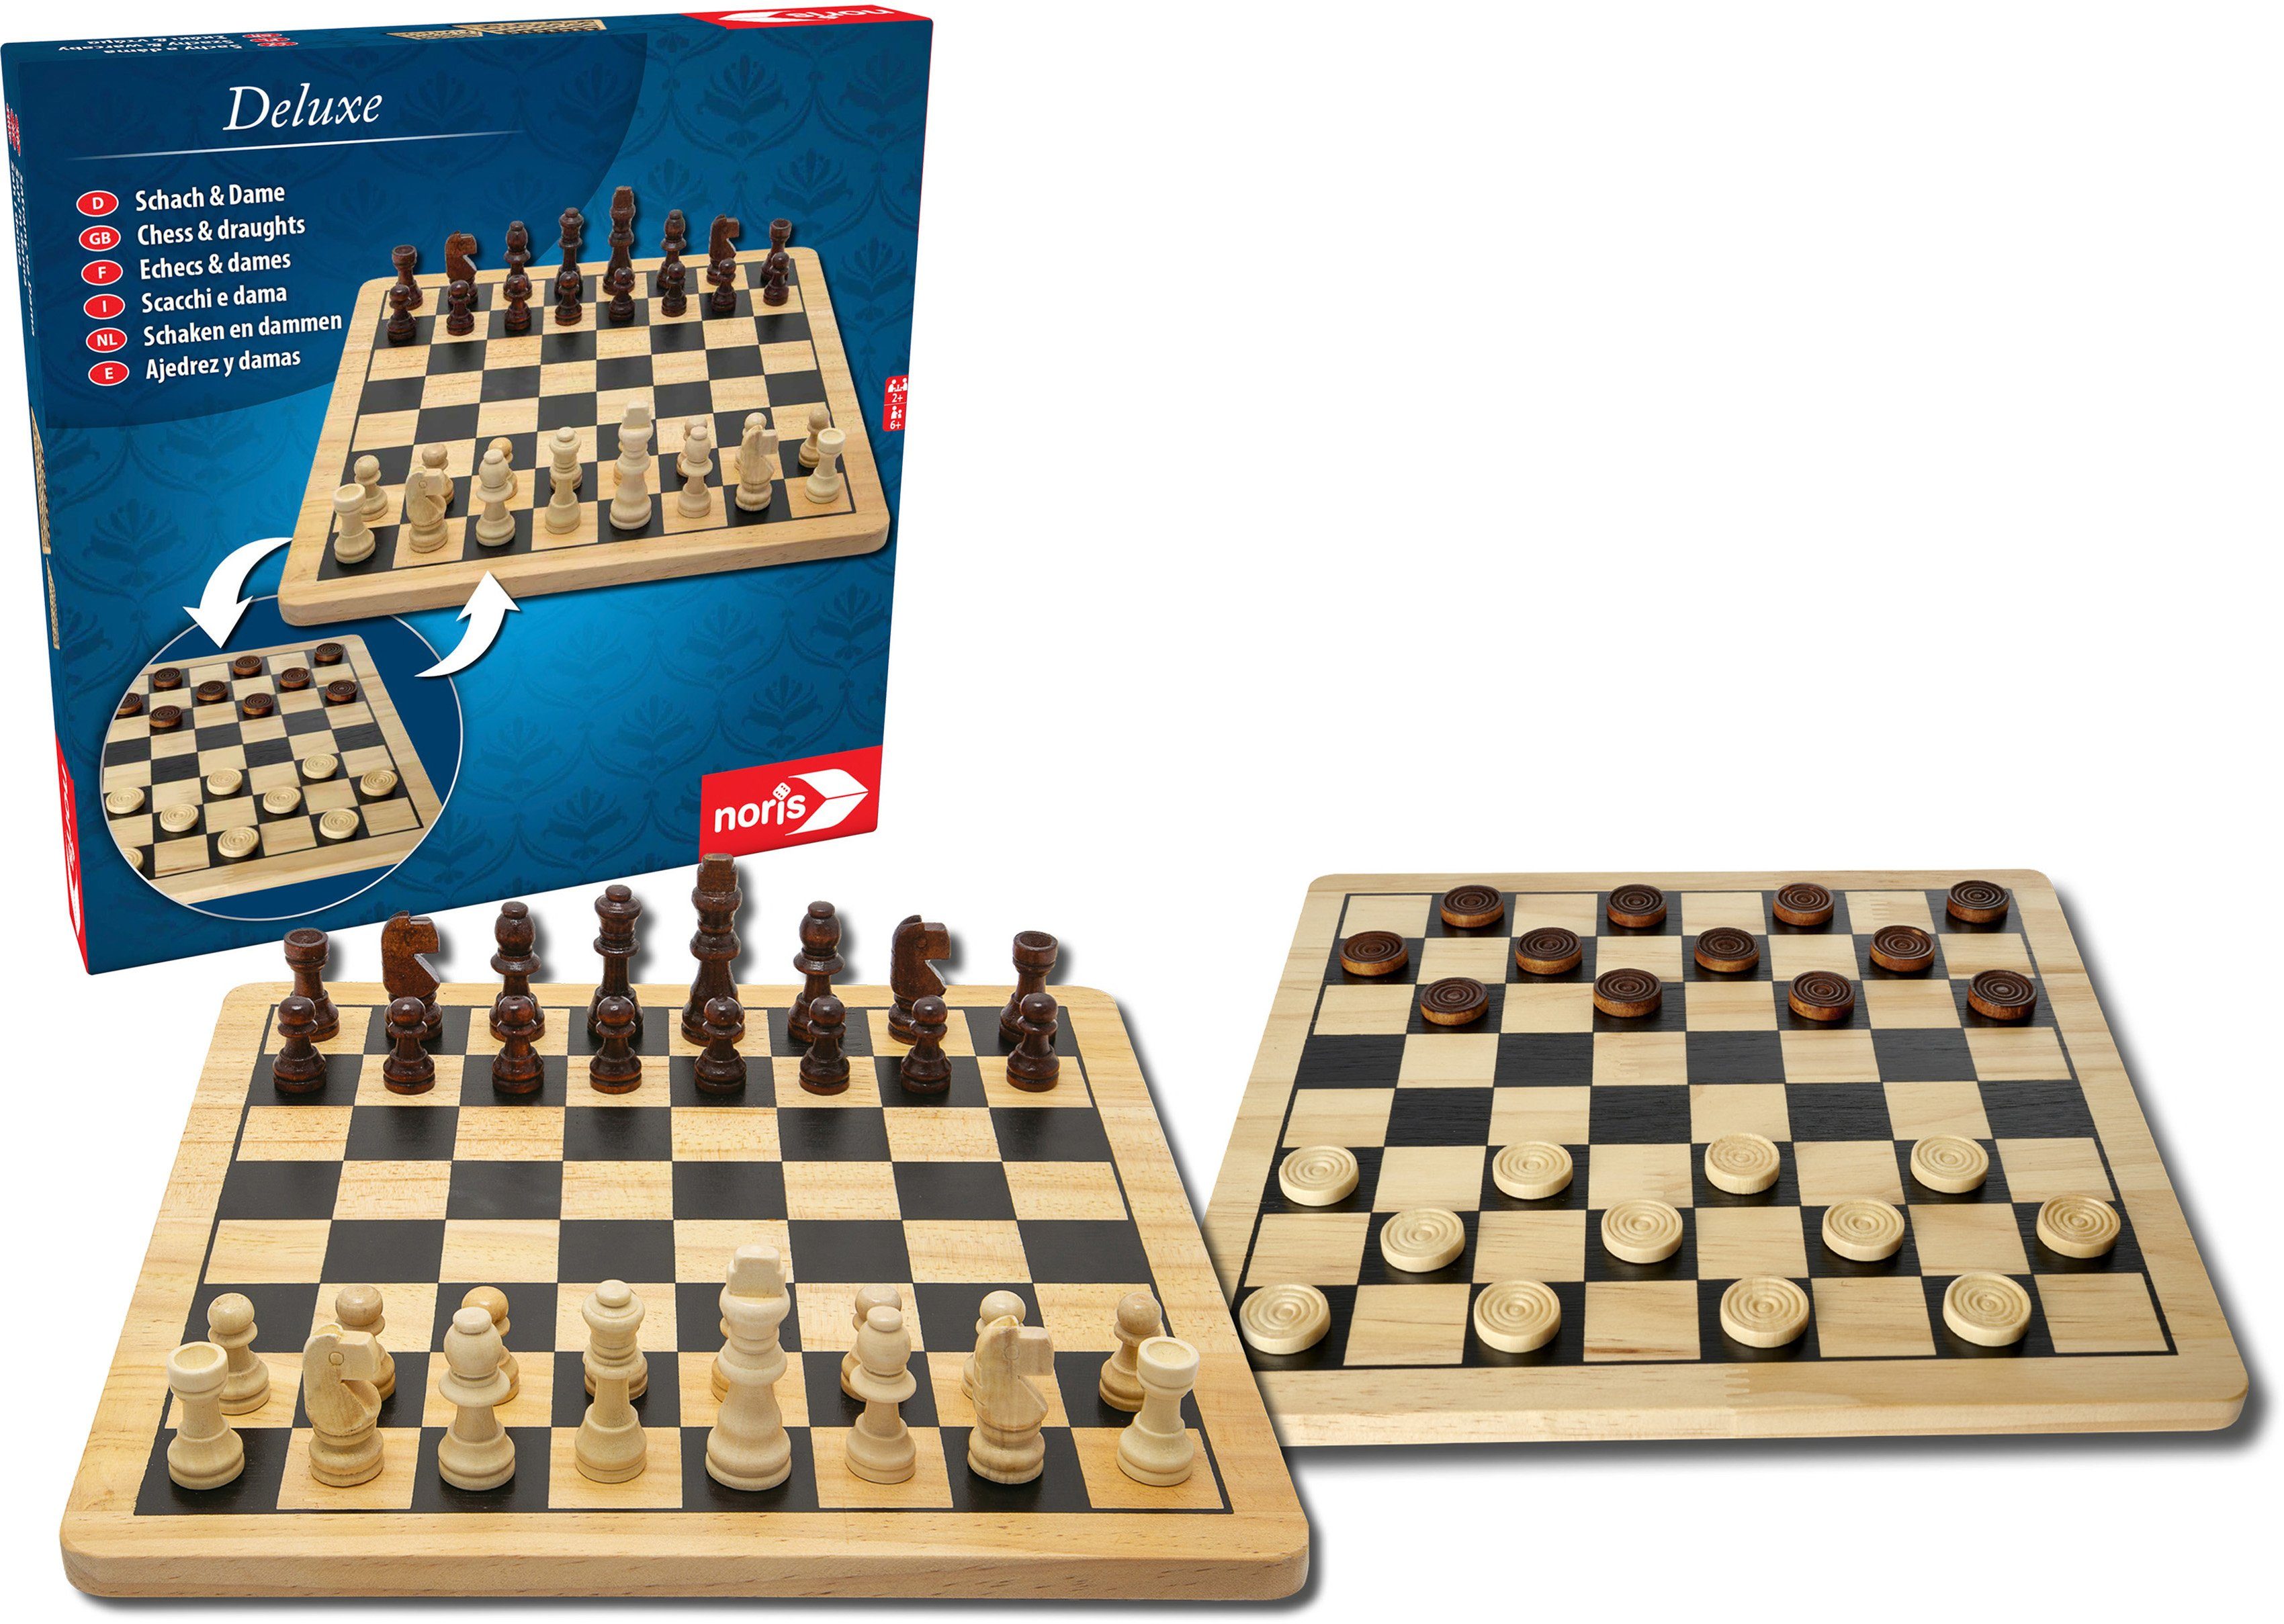 Deluxe Reisespiel Schach online kaufen